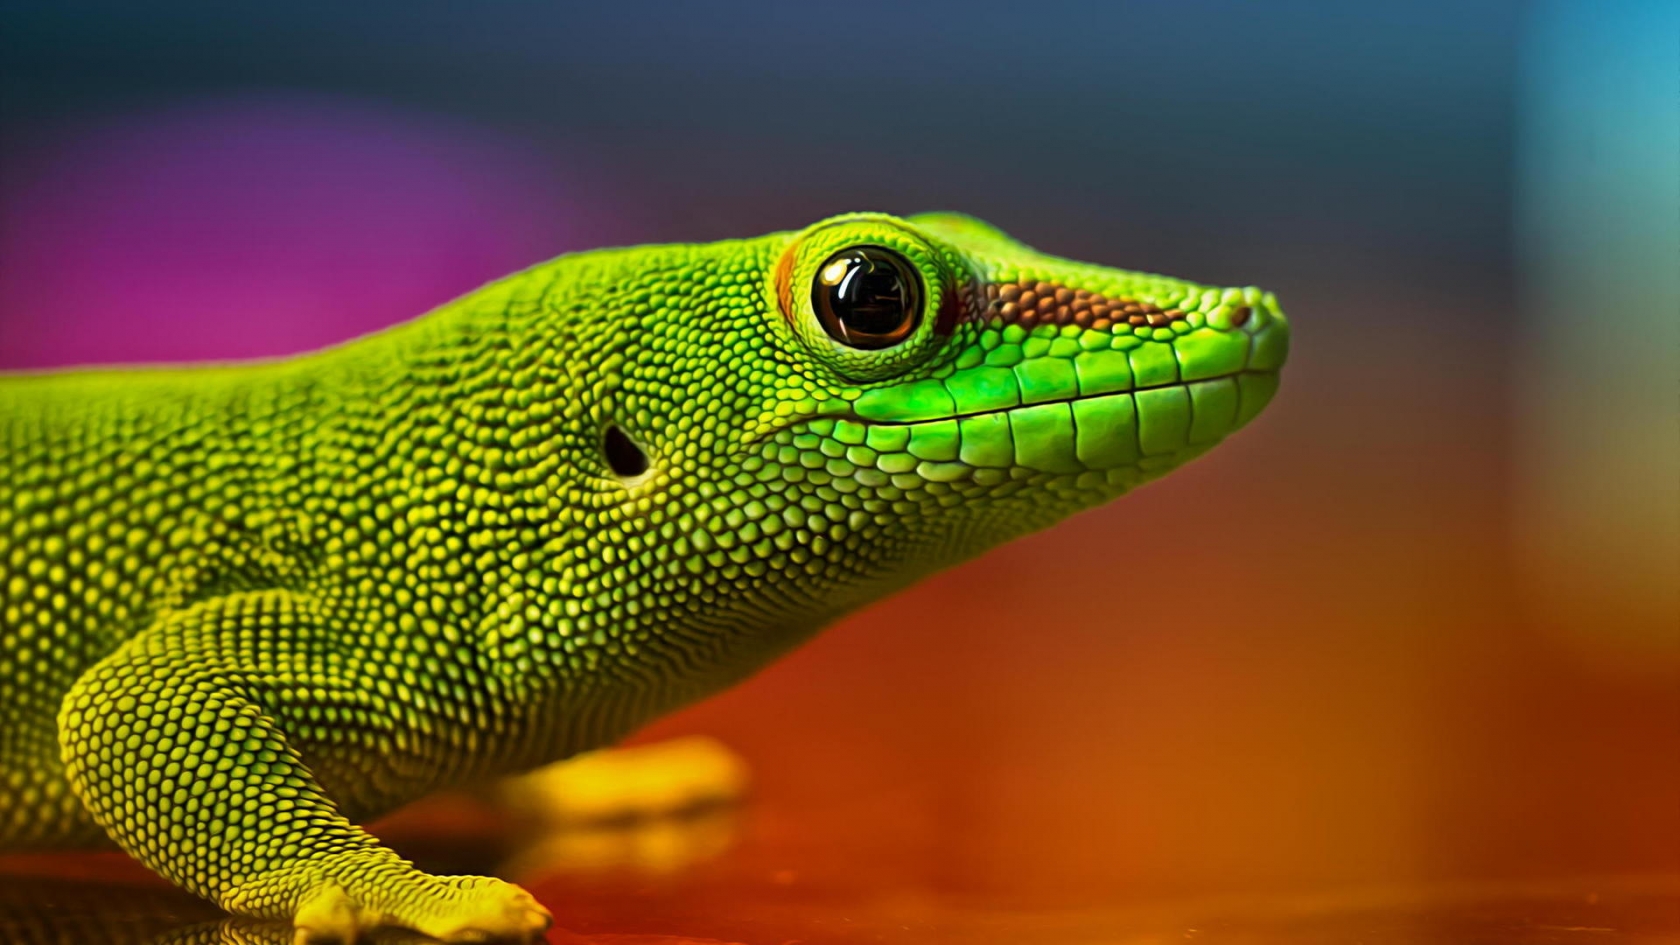 Green Lizard for 1680 x 945 HDTV resolution